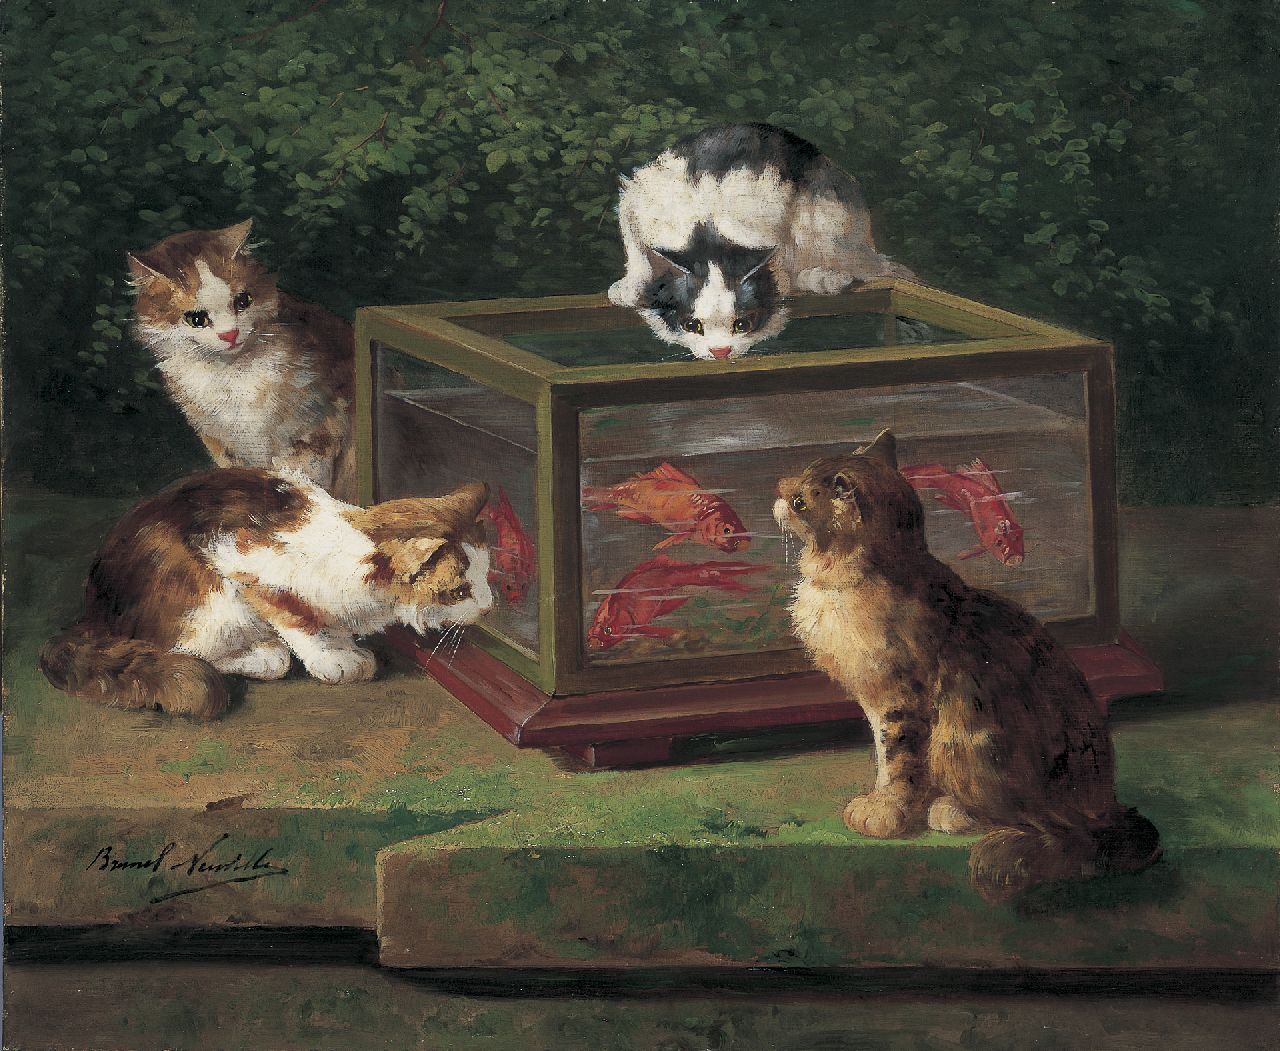 Alfred-Arthur de Brunel de Neuville | Vier poezen rond een aquarium, olieverf op doek, 54,0 x 65,2 cm, gesigneerd l.o.